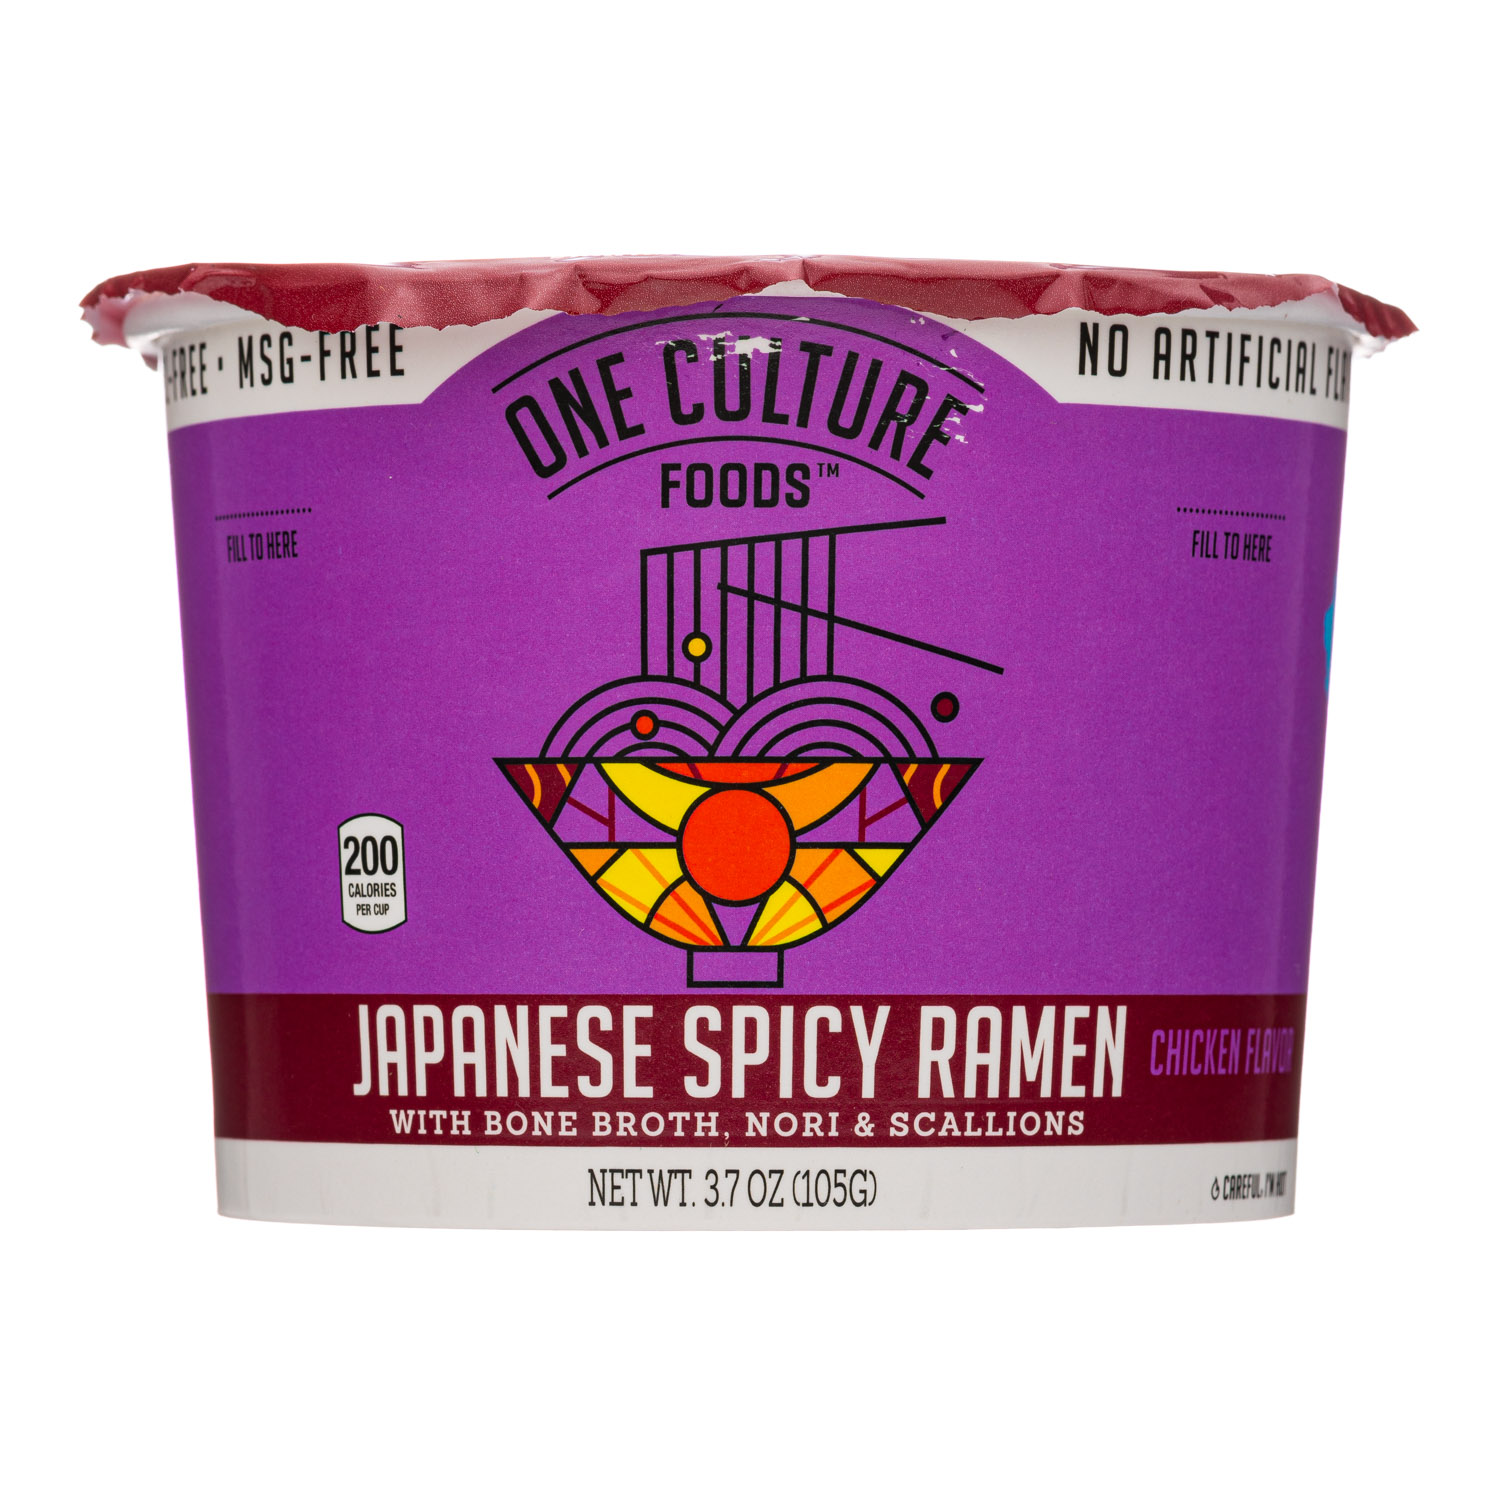 Japanese Spicy Ramen